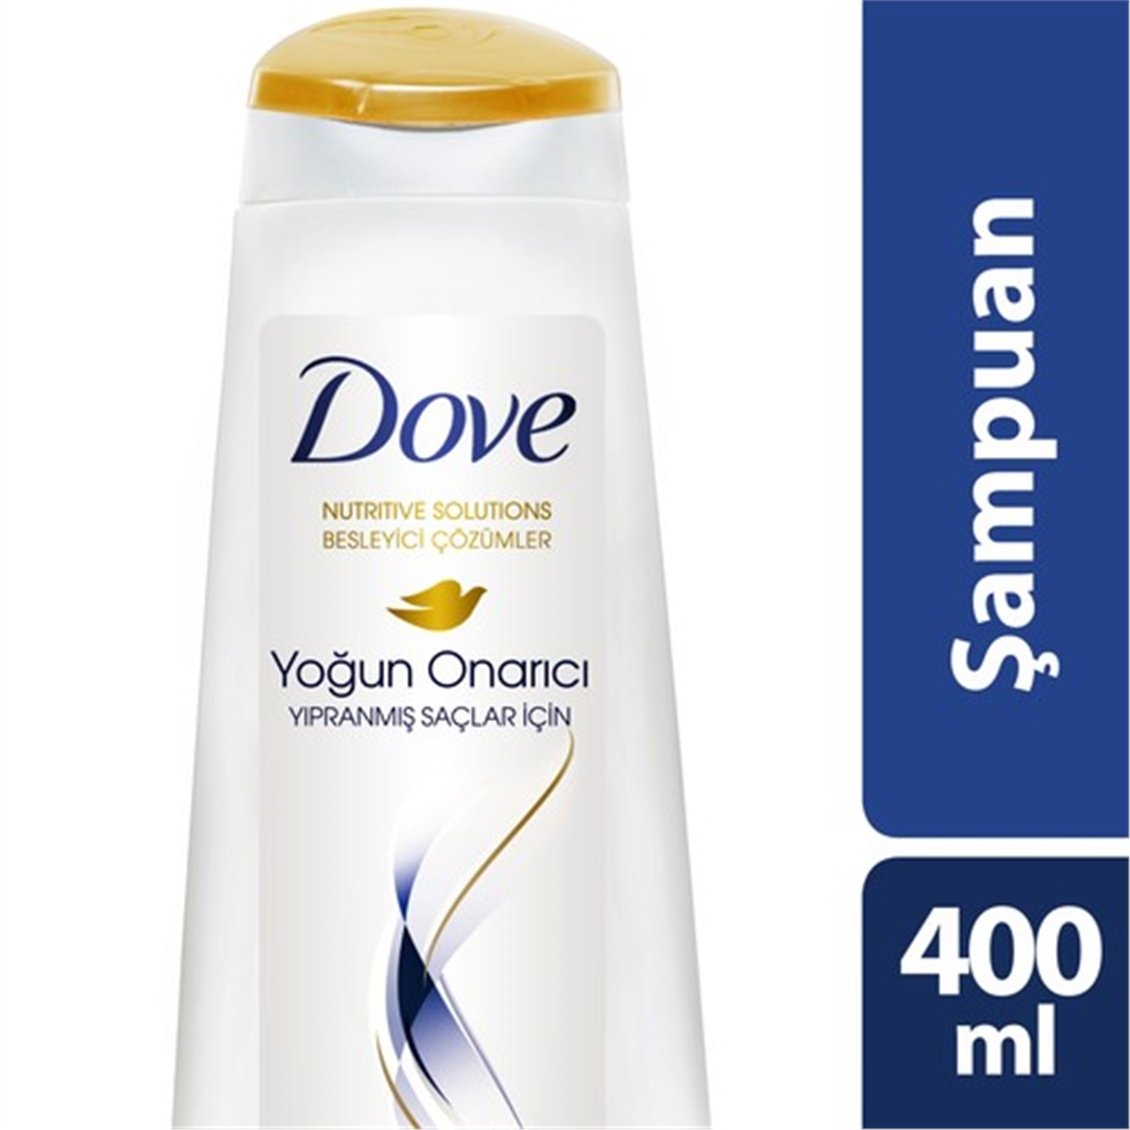 Dove Şampuan 400Ml Yoğun Onarıcı - Onur Market